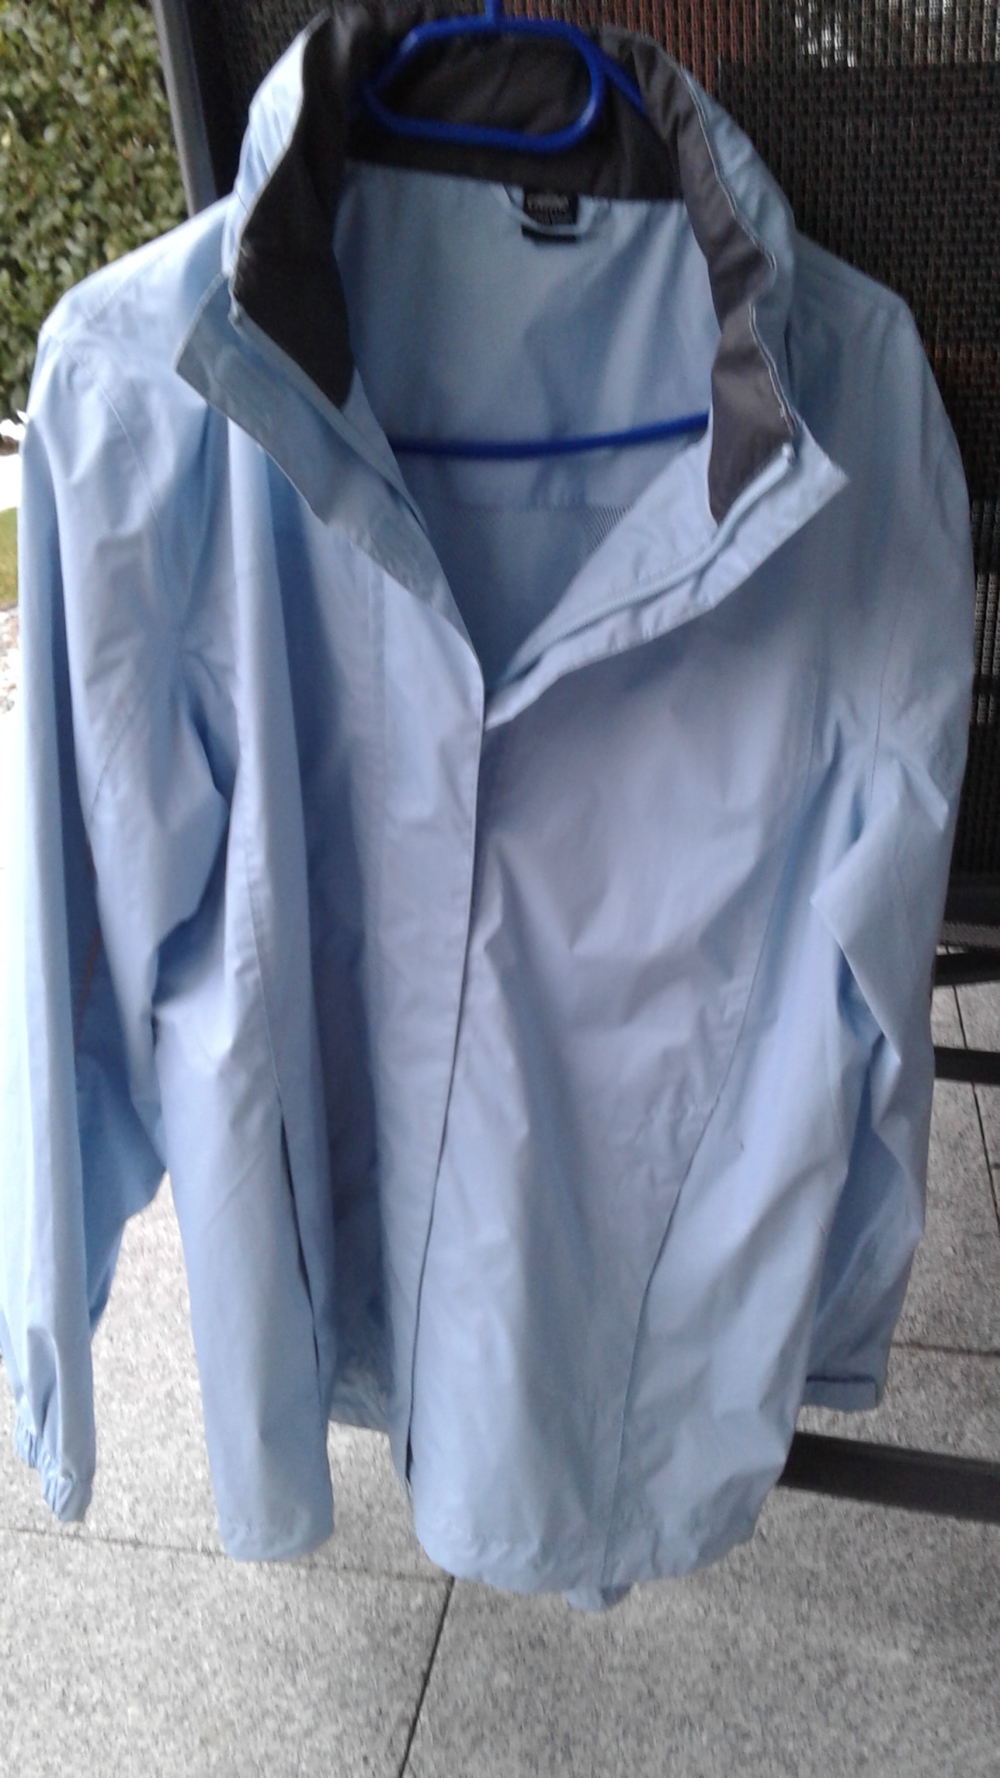  Damen-Regenjacke in hellblau, Größe 44 46 